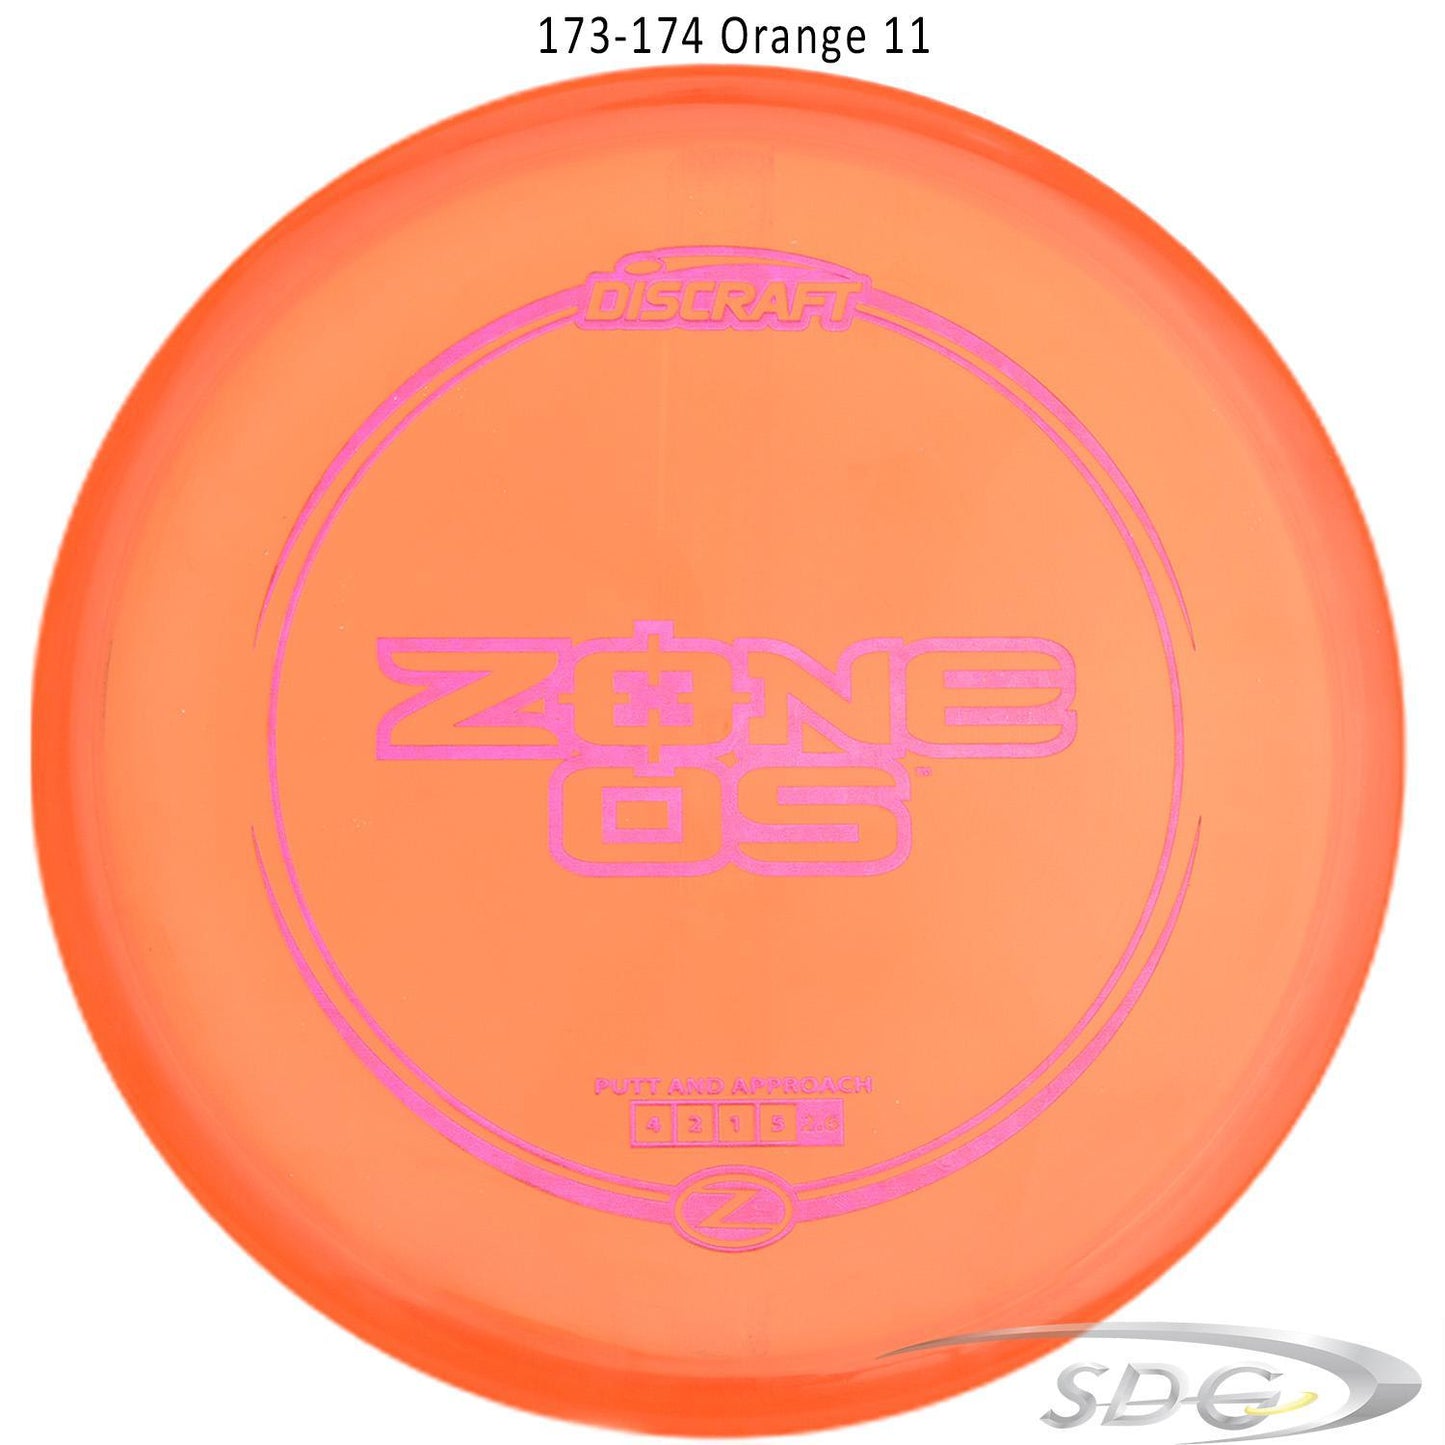 discraft-z-line-zone-os-disc-golf-putter-176-173-weights-1 173-174 Orange 11 